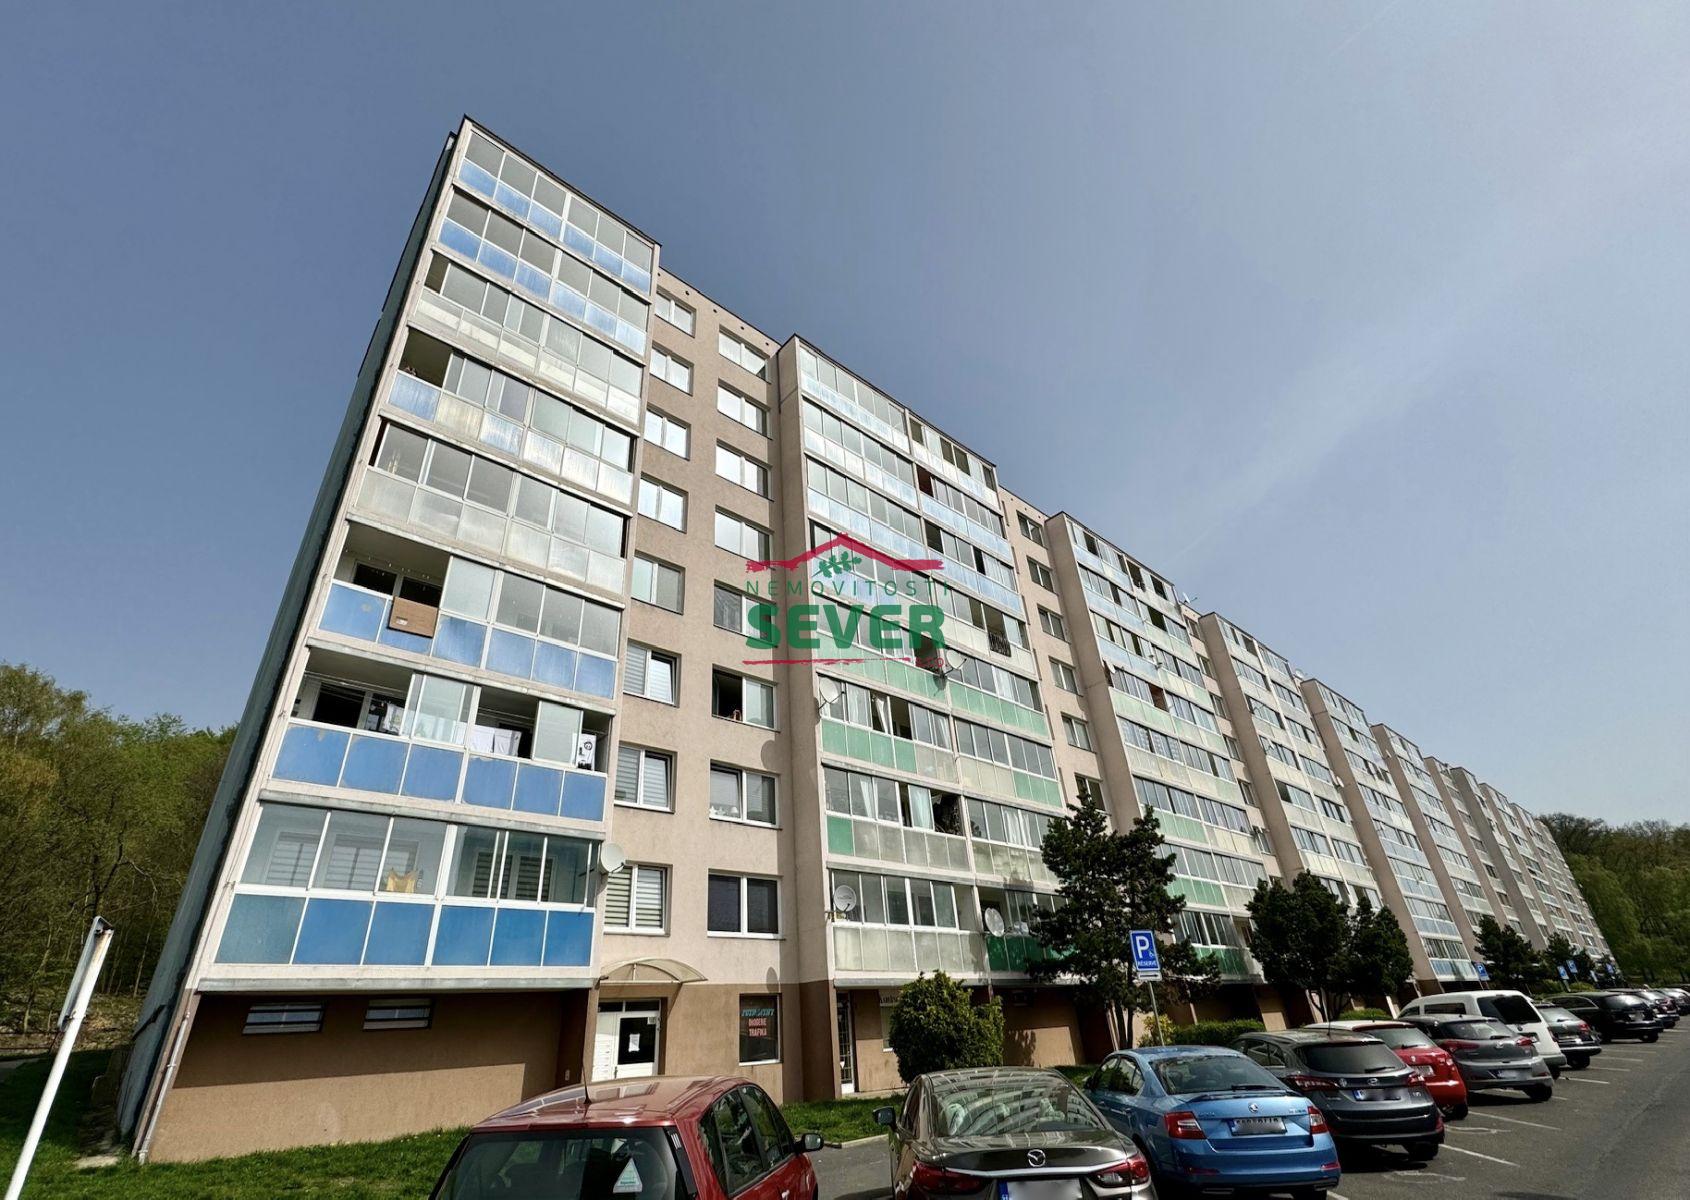 Prodej, byt 4+1, DV, Litvínov - Janov, ul. Luční